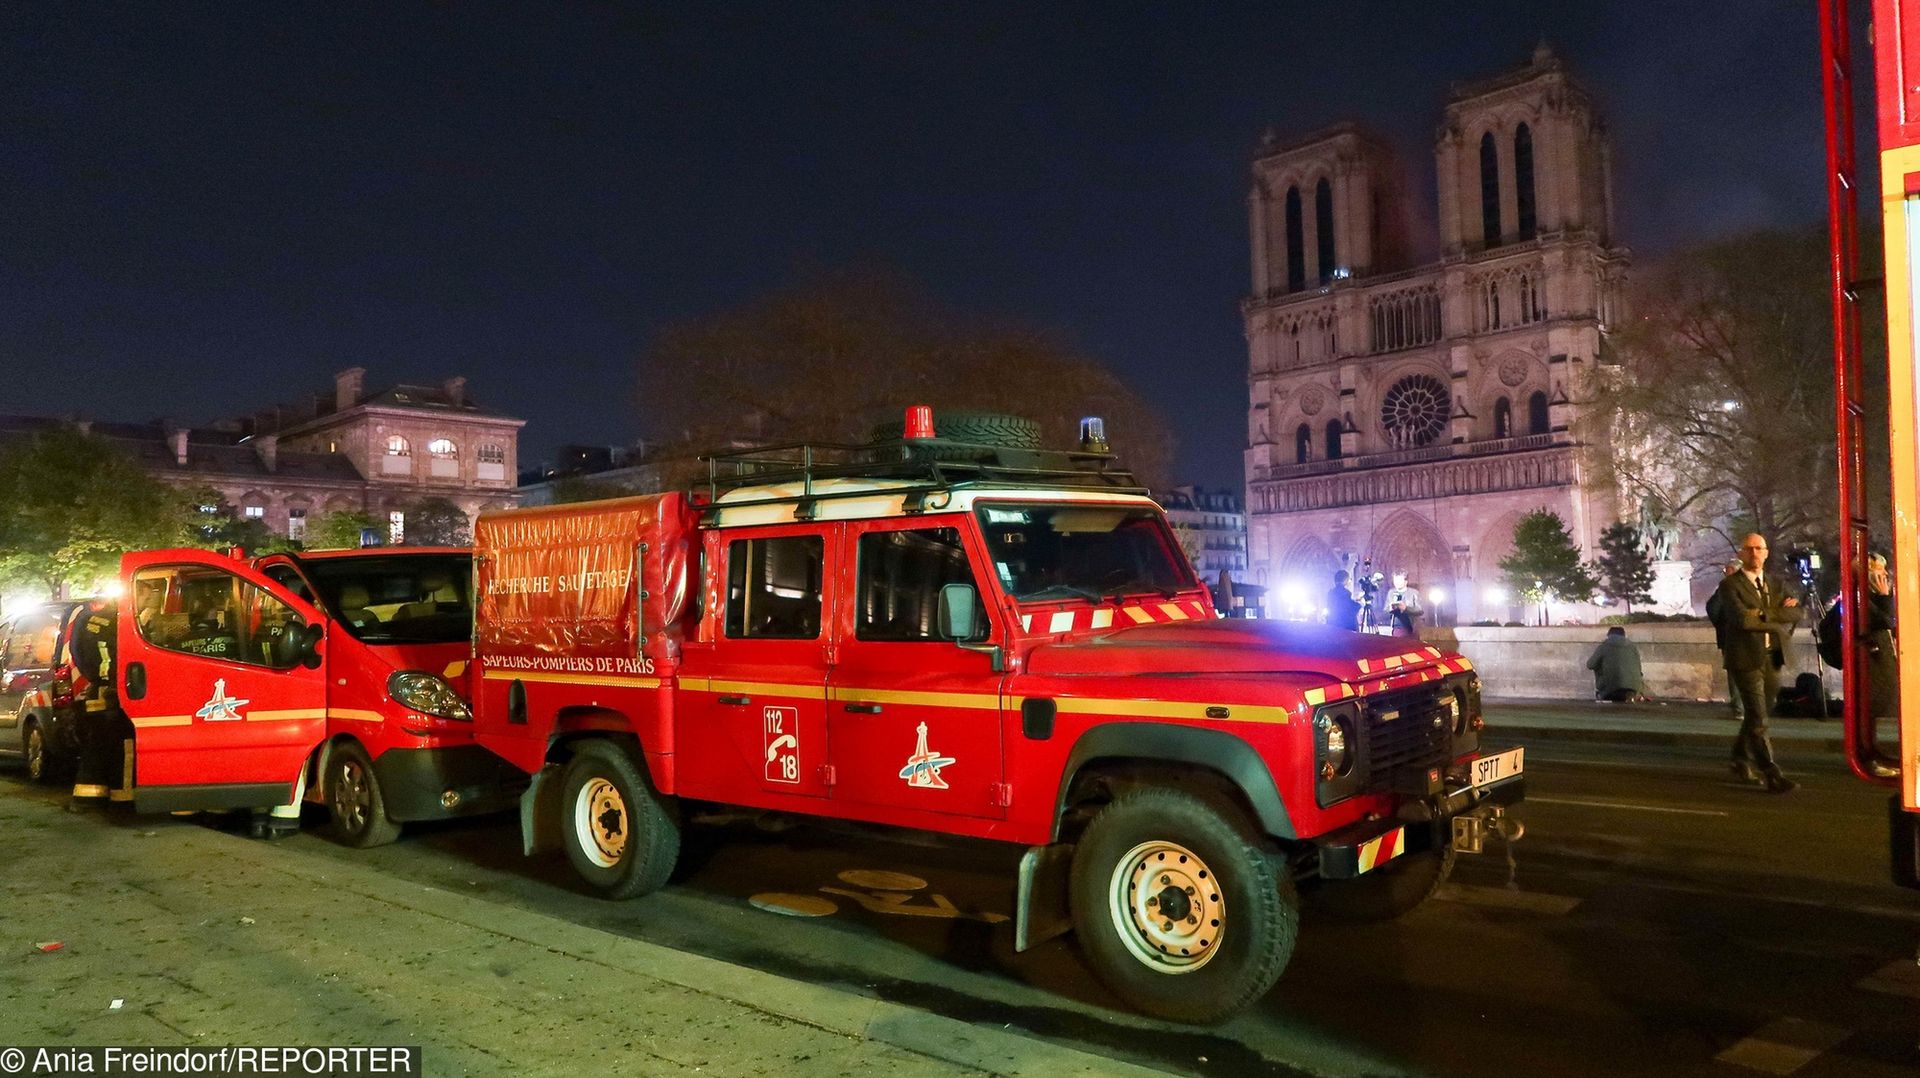 Paryska straż pożarna